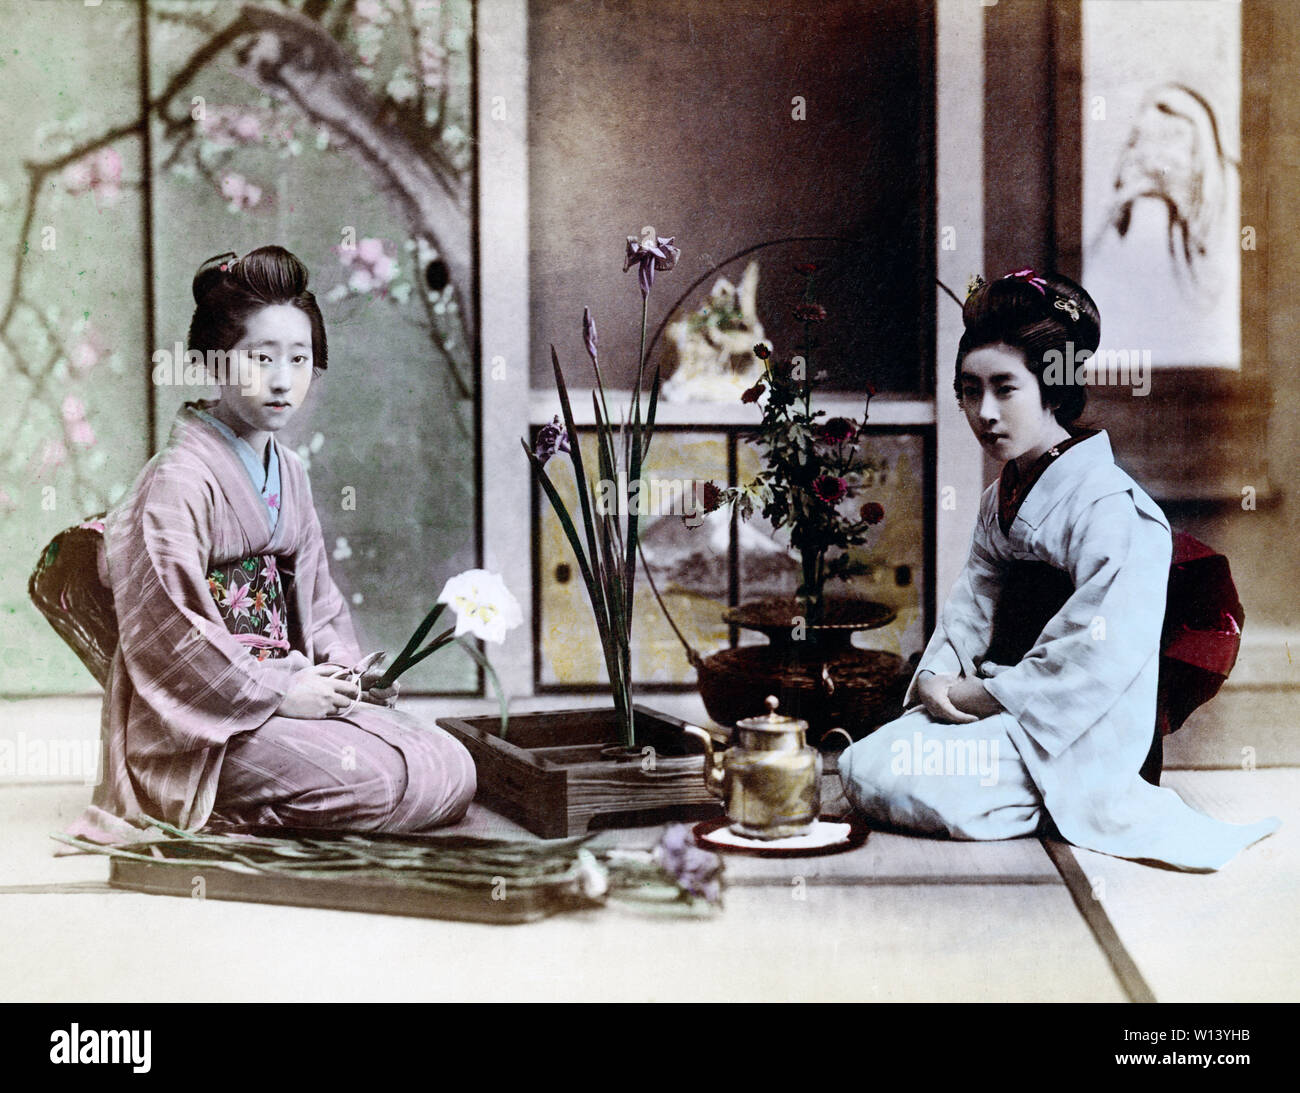 [ 1890 Giappone - dimostrazione di Ikebana ] - Ikebana o giapponese tradizionale omaggio floreale. Due donne in kimono sono disponendo dei fiori mentre è seduto sul tatami (riso tappetini). In retro shoji (carta sliding door) decorato con un dipinto di fiori può essere visto. Xix secolo albume vintage fotografia. Foto Stock